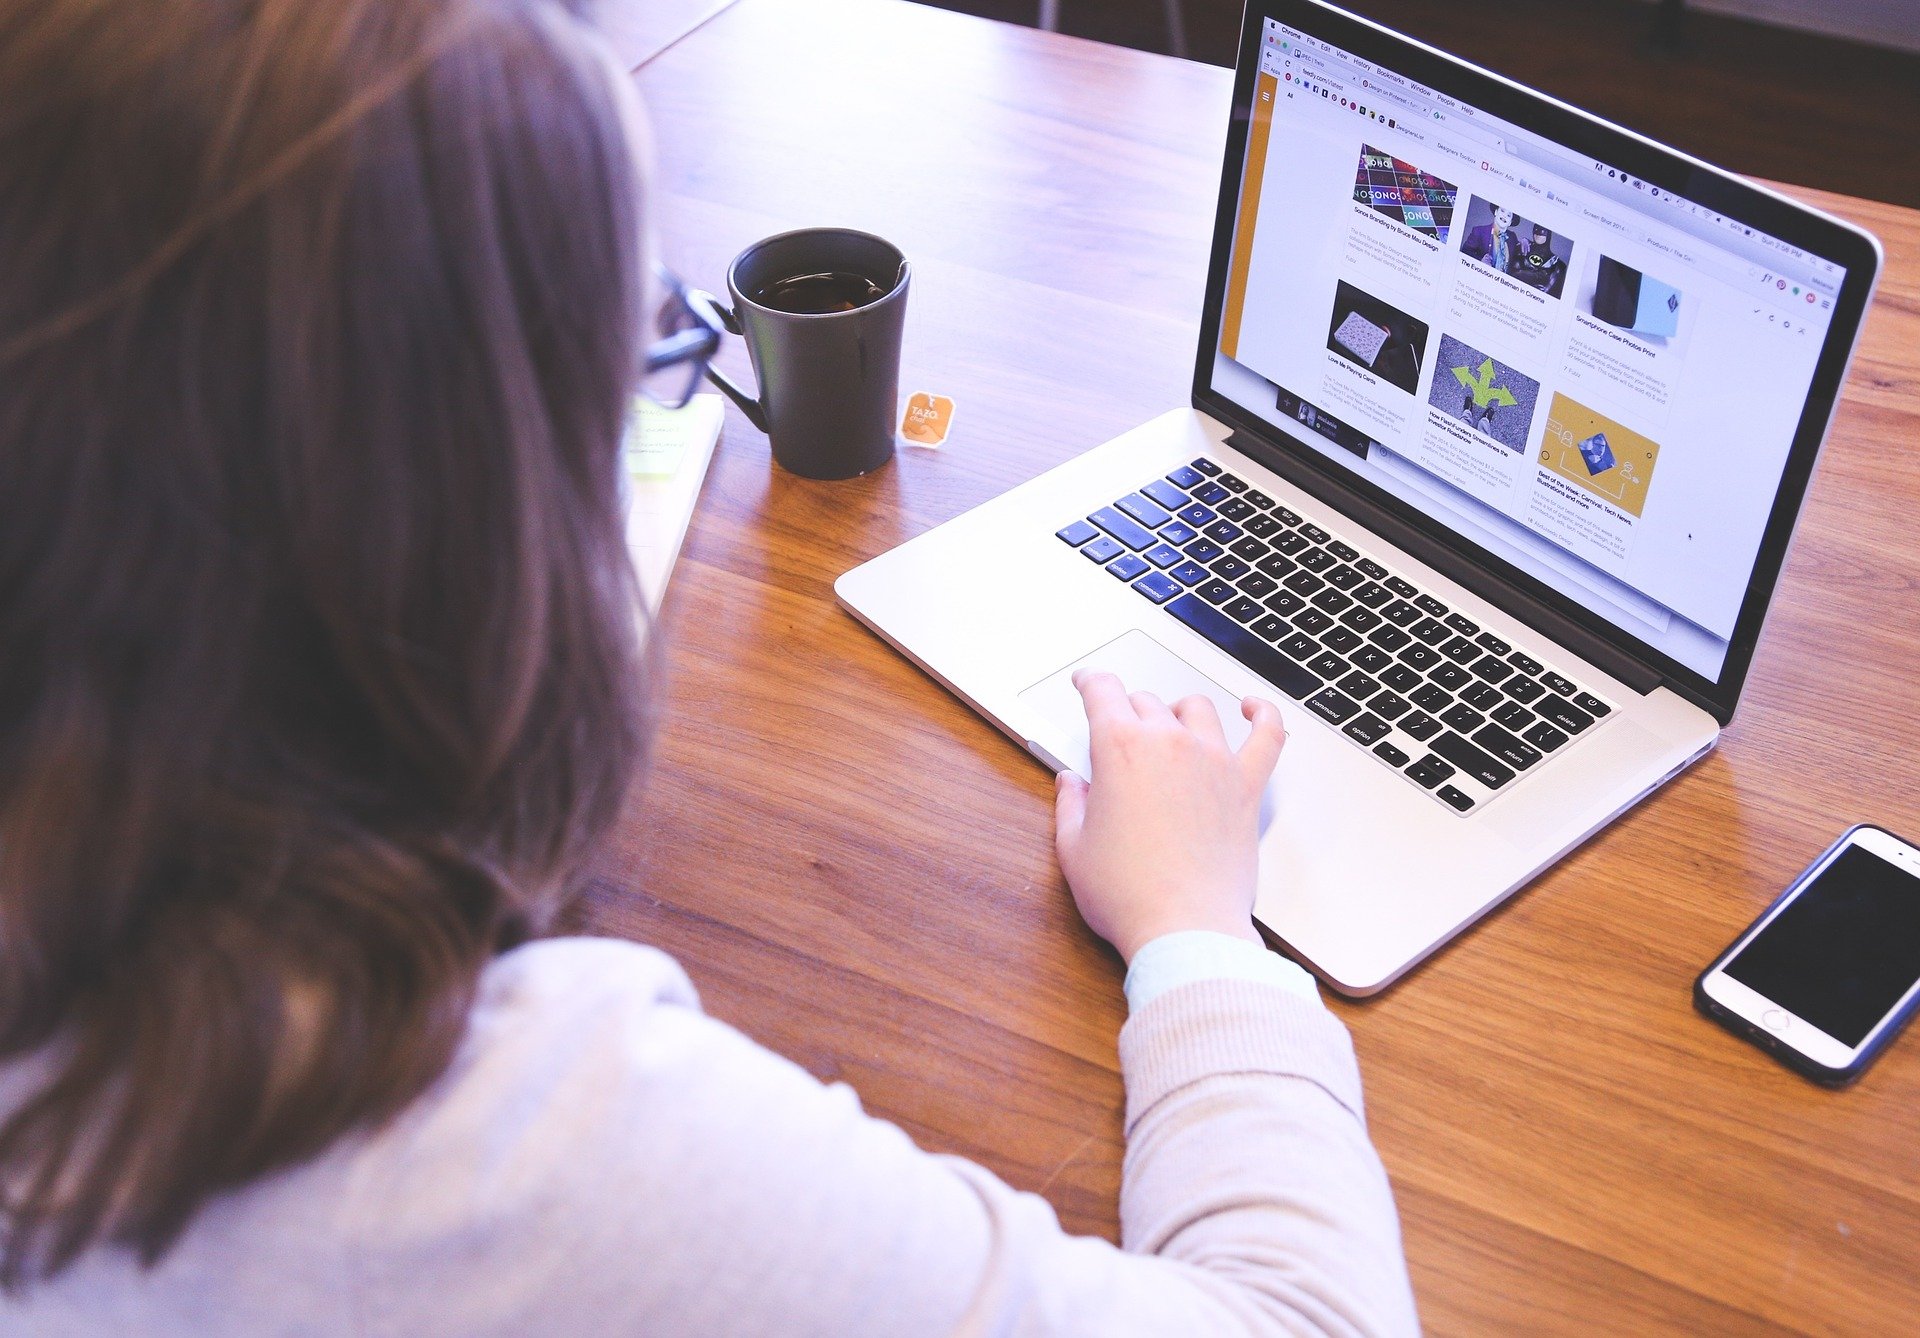 Une femme est assise devant un ordinateur qui affiche une page Web contenant six images. Elle a une tasse de café à sa gauche et un téléphone à sa droite.